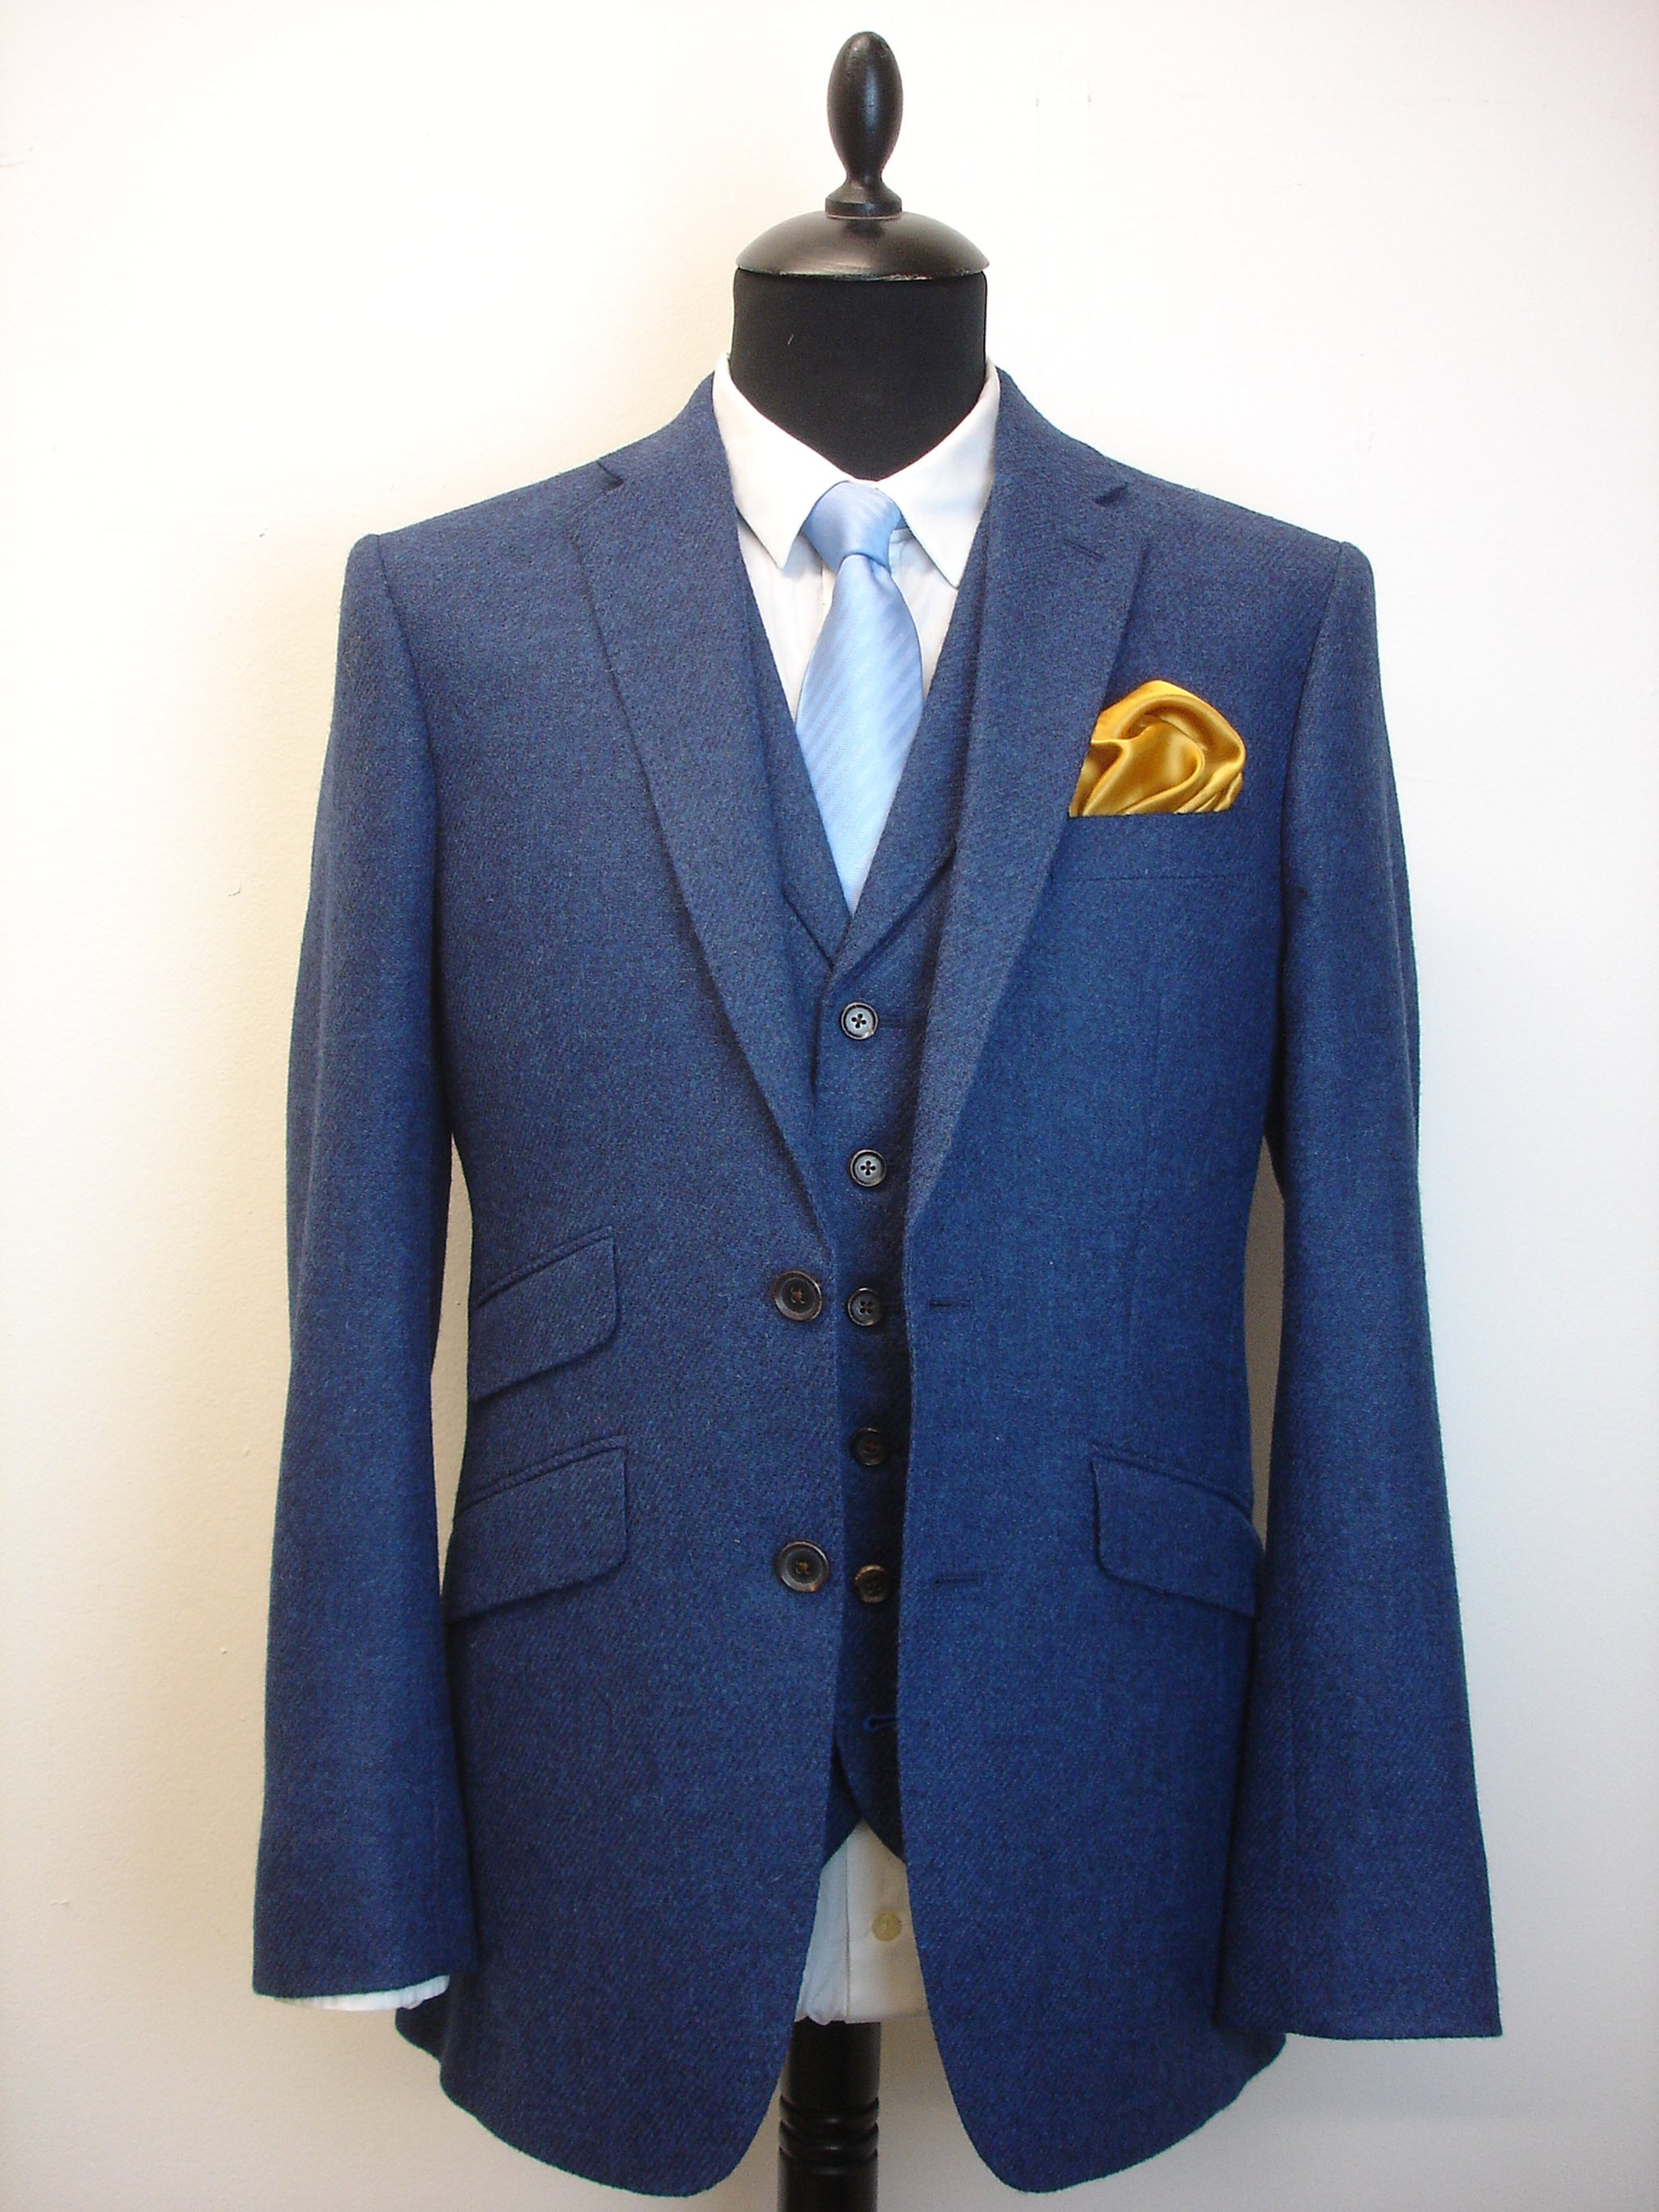 3 Piece Suit in Holland & SHerry Shetland Tweed (6).JPG